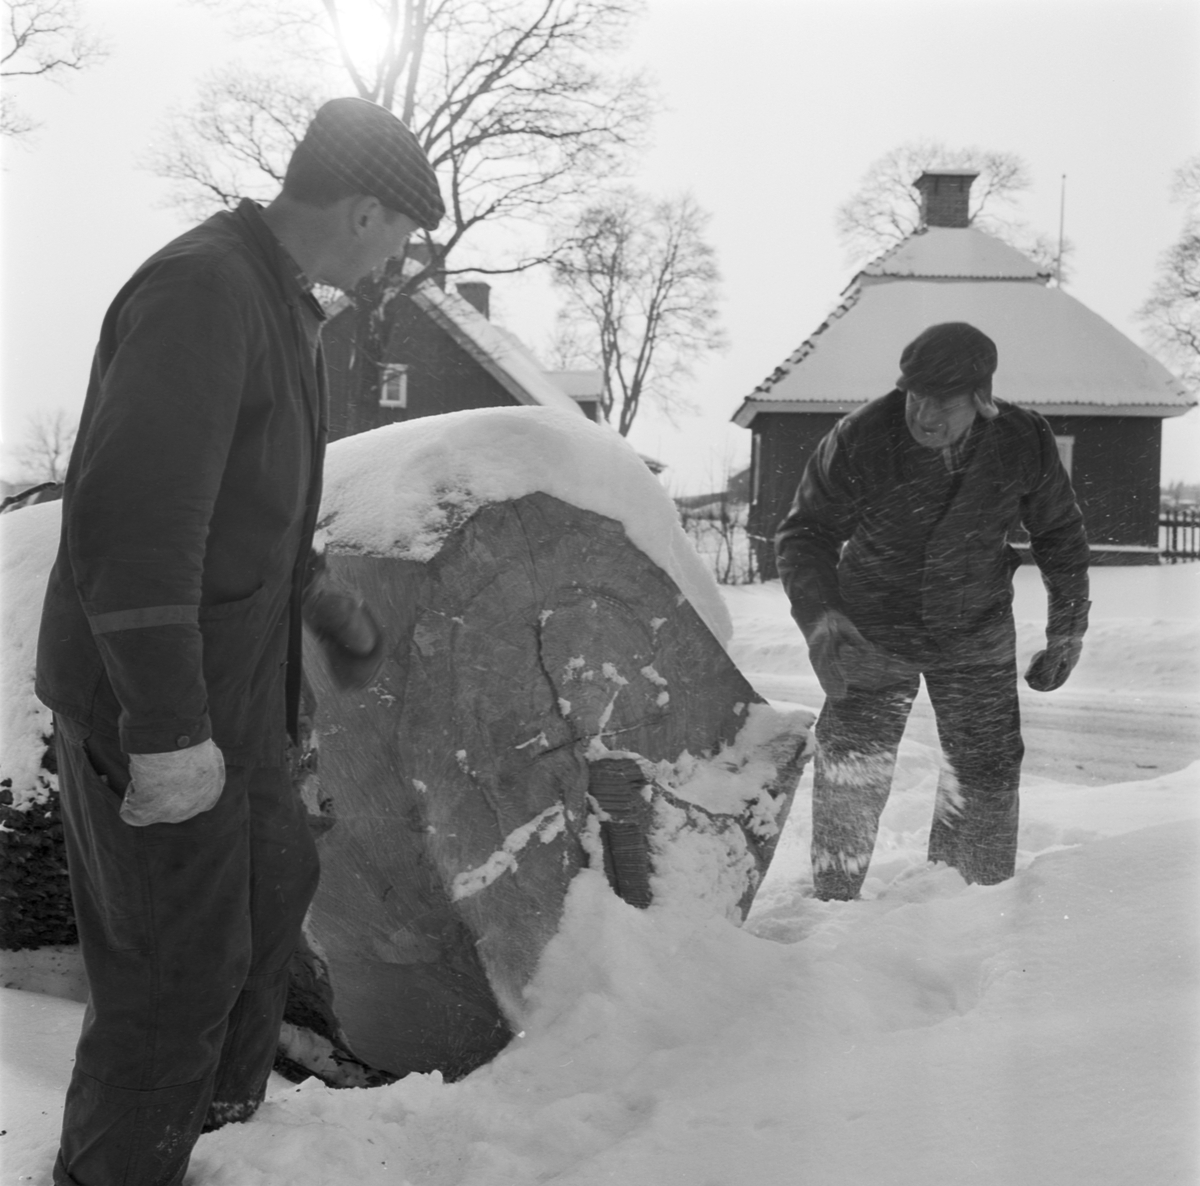 Trädbeskärning i Allé, Åkerby, Österlövsta socken, Uppland, februari 1969